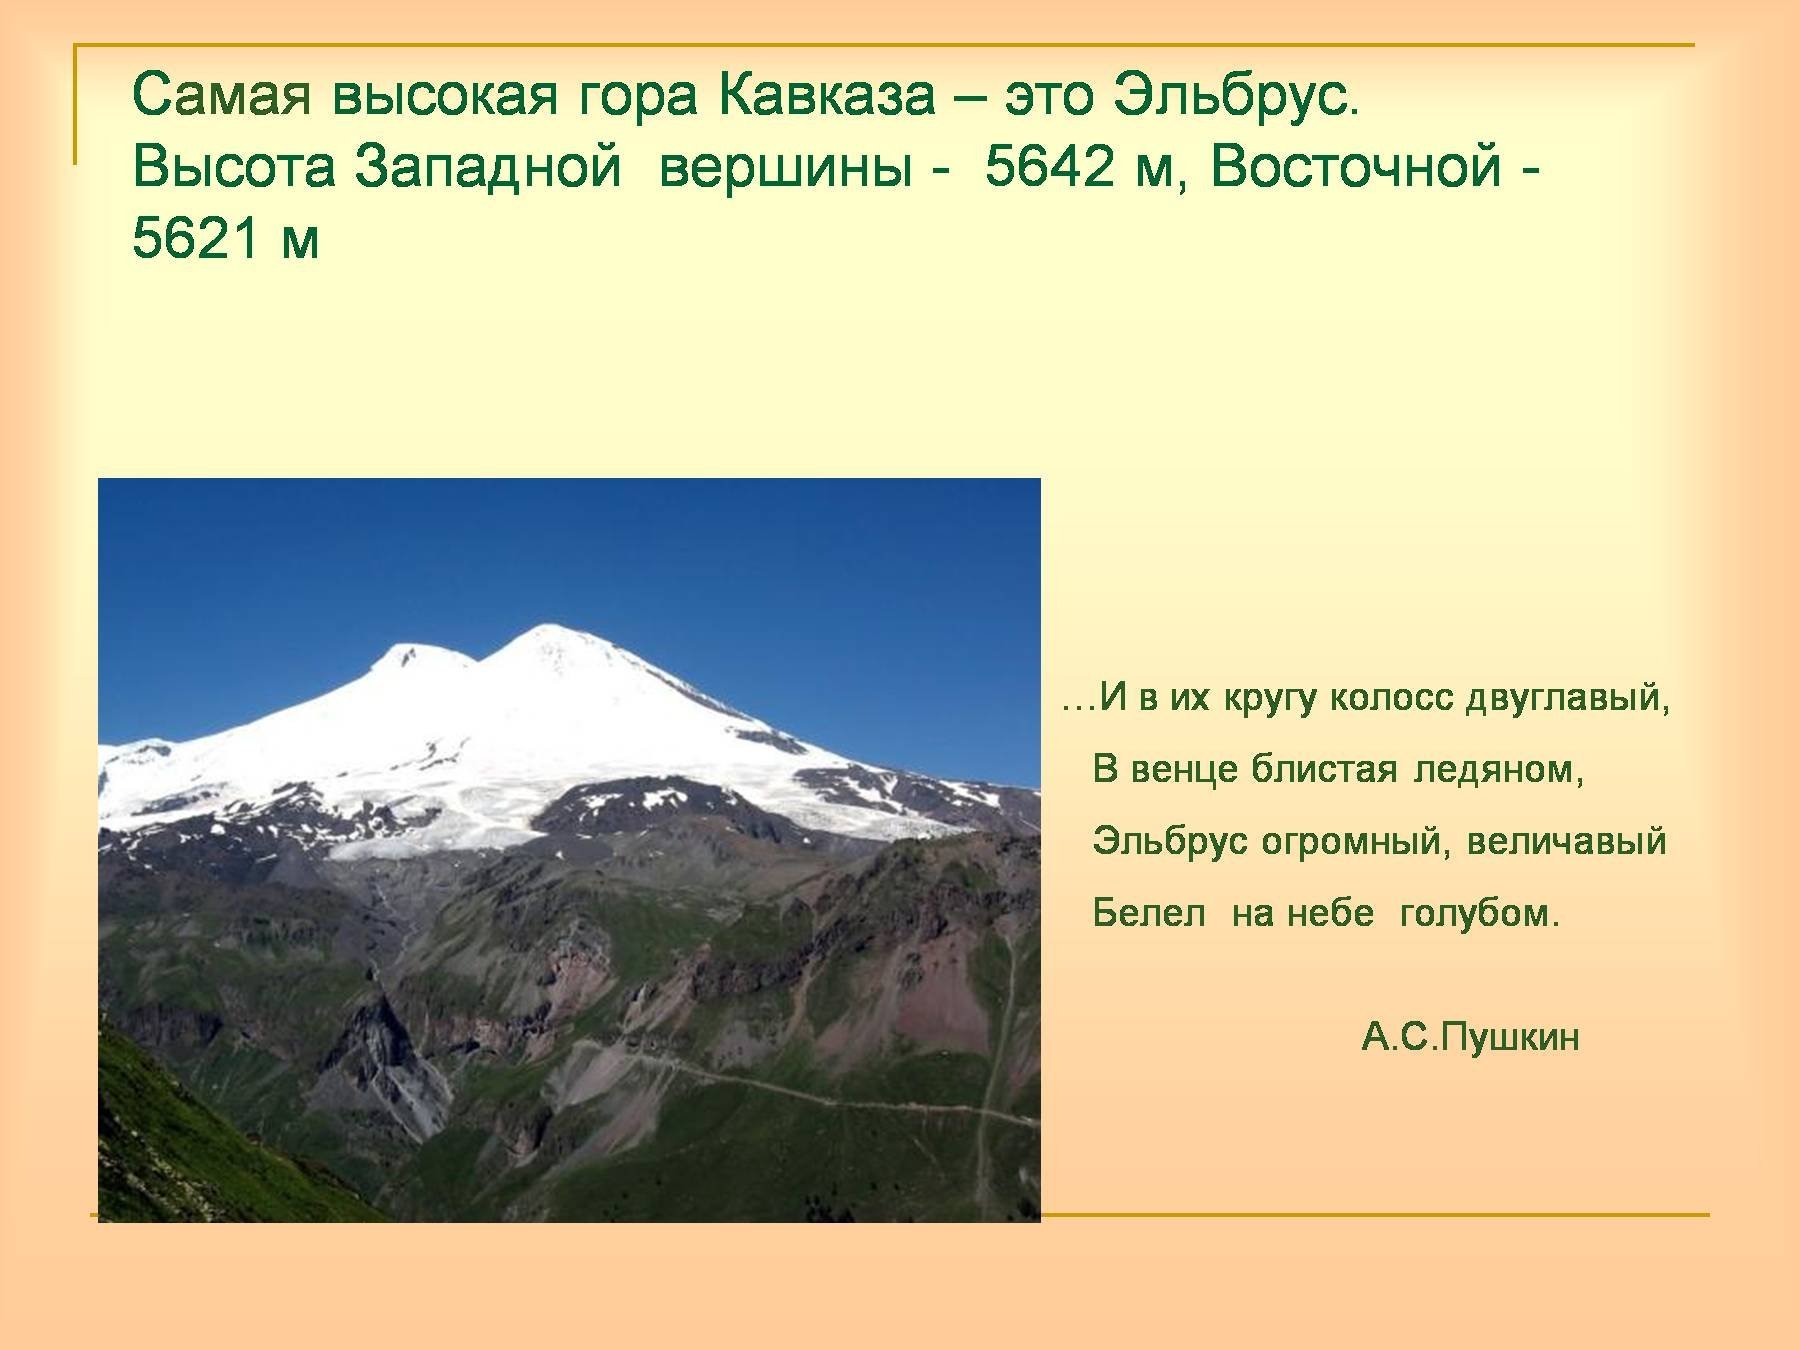 Гора Эльбрус - самая высокая гора России